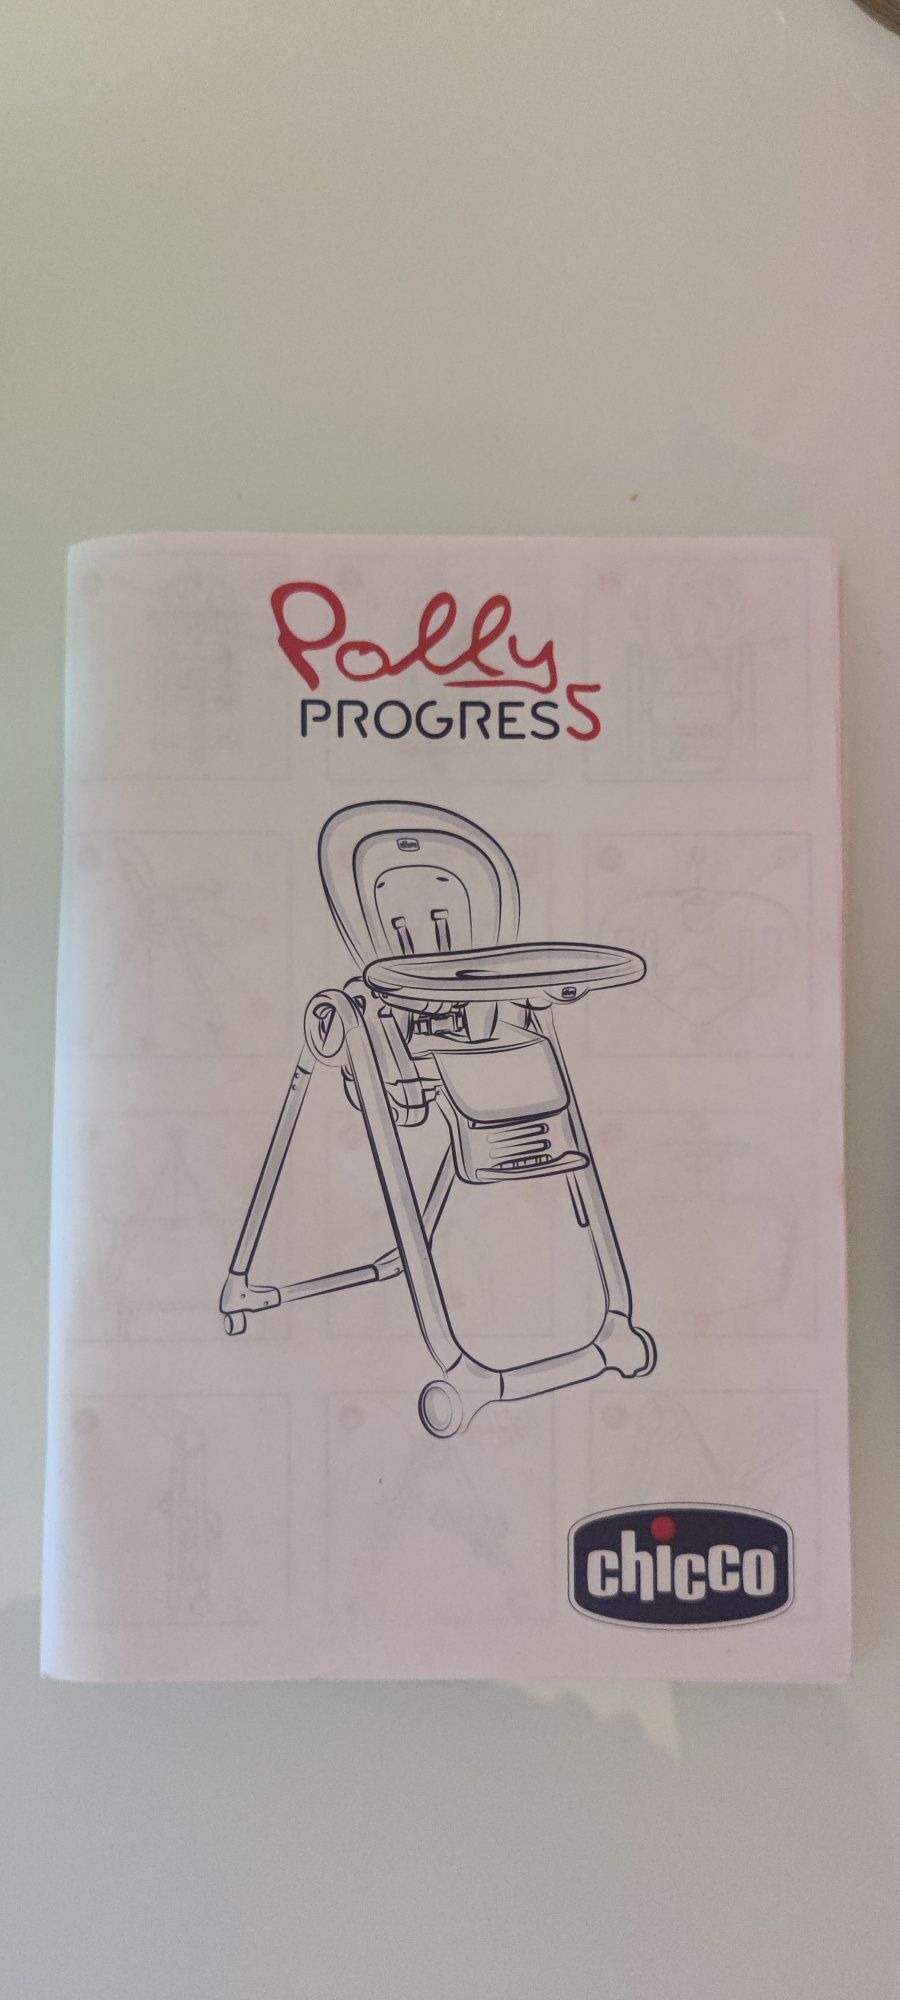 Cadeira Polly progress5